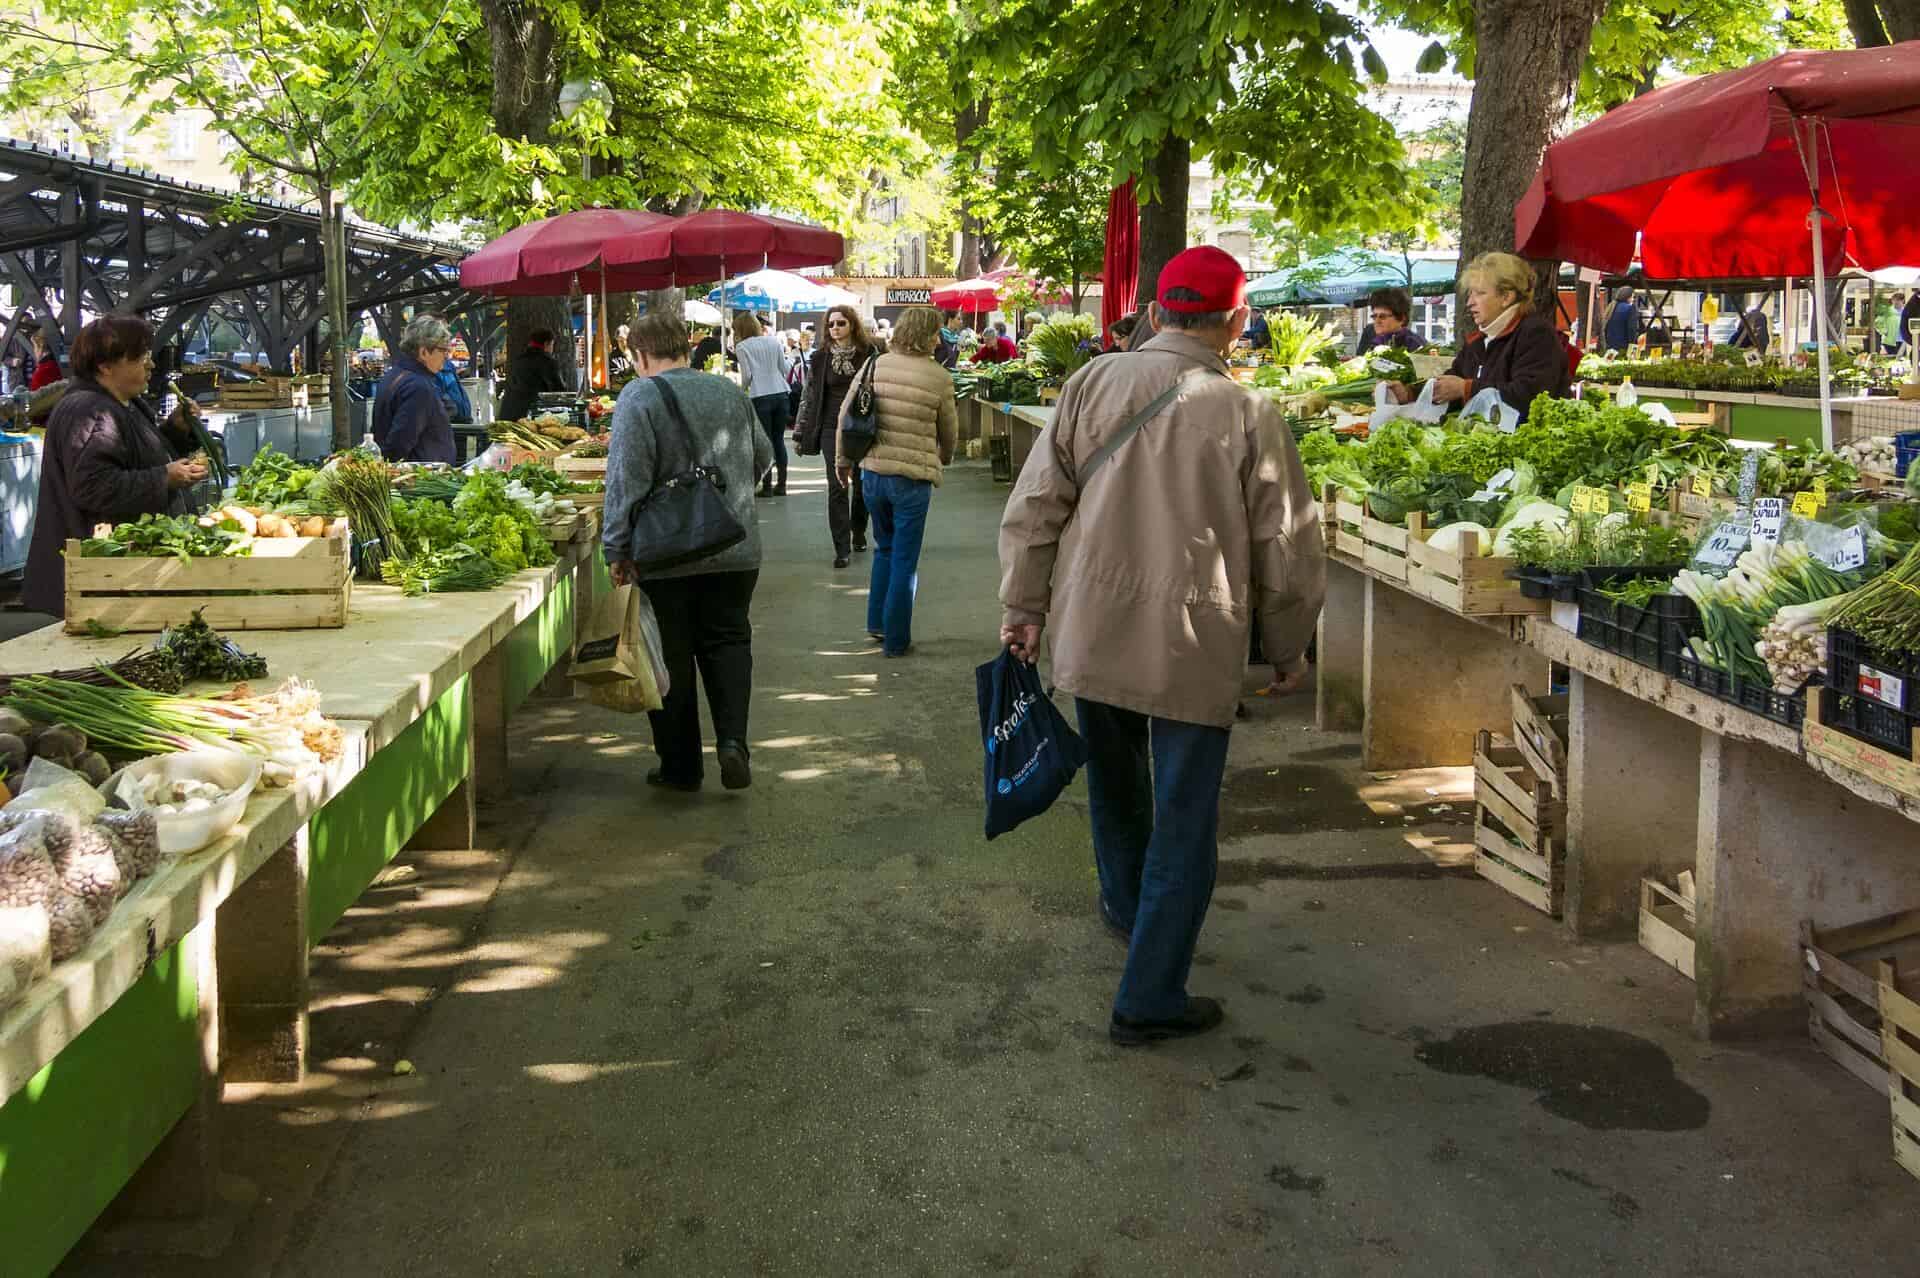 Menschen auf dem Wochenmarkt mit Obst- und Gemüseständen